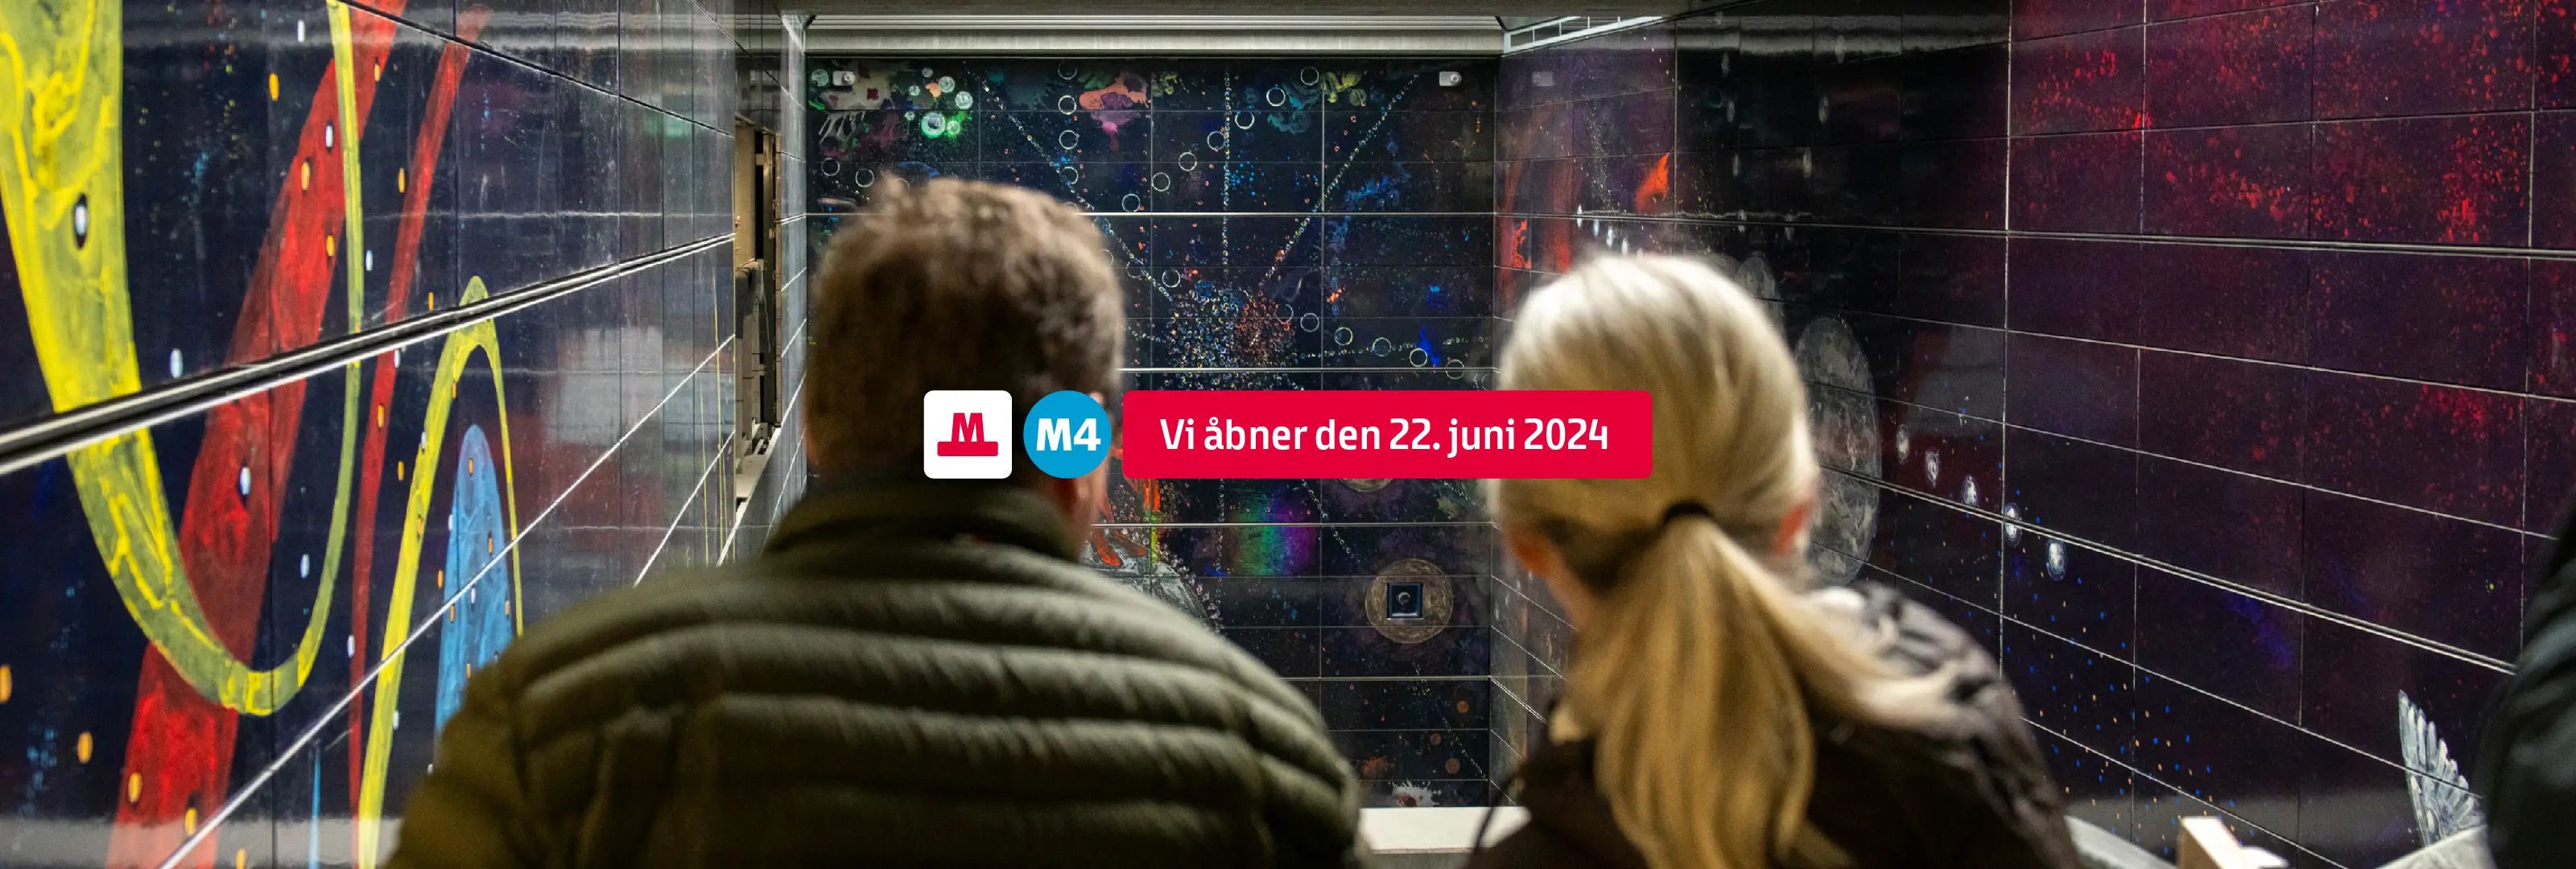 Metrolinjen M4 til Sydhavn og Valby åbner den 22. juni